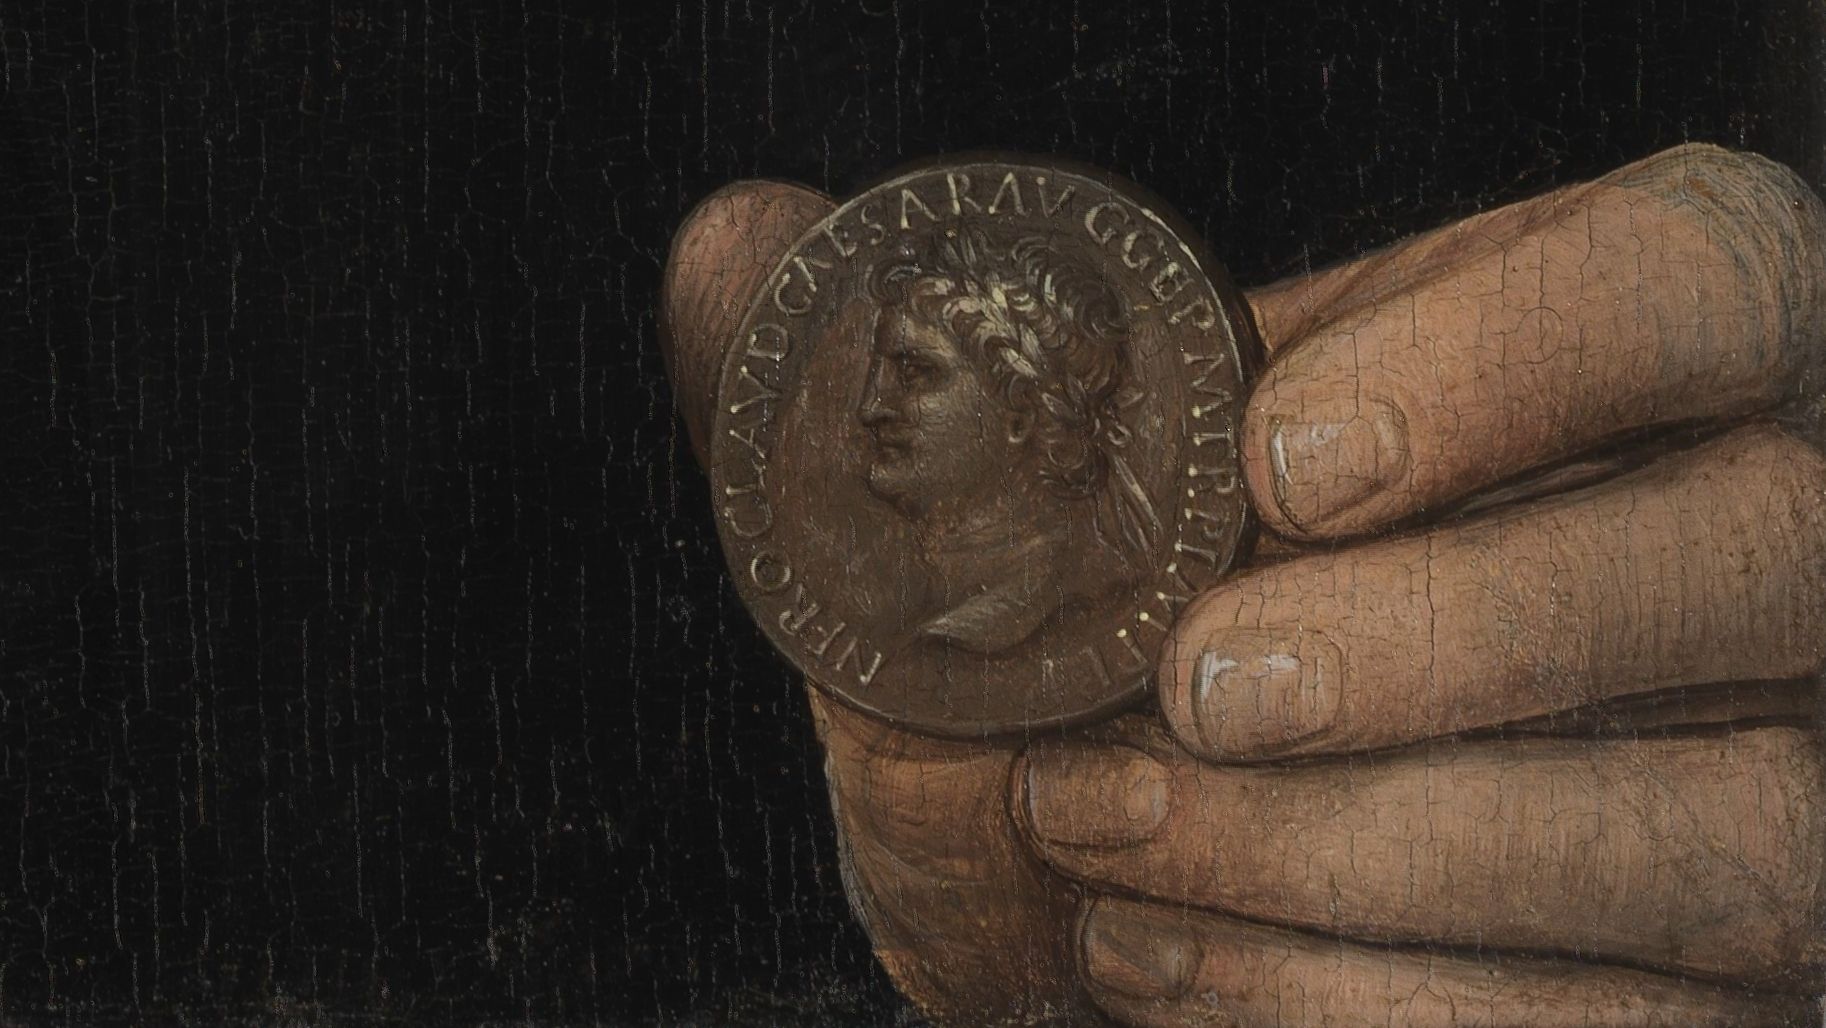 Ганс Мемлинг. Портрет мужчины с монетой императора Нерона (Бернардо Бембо) — фрагмент. До 1480 года